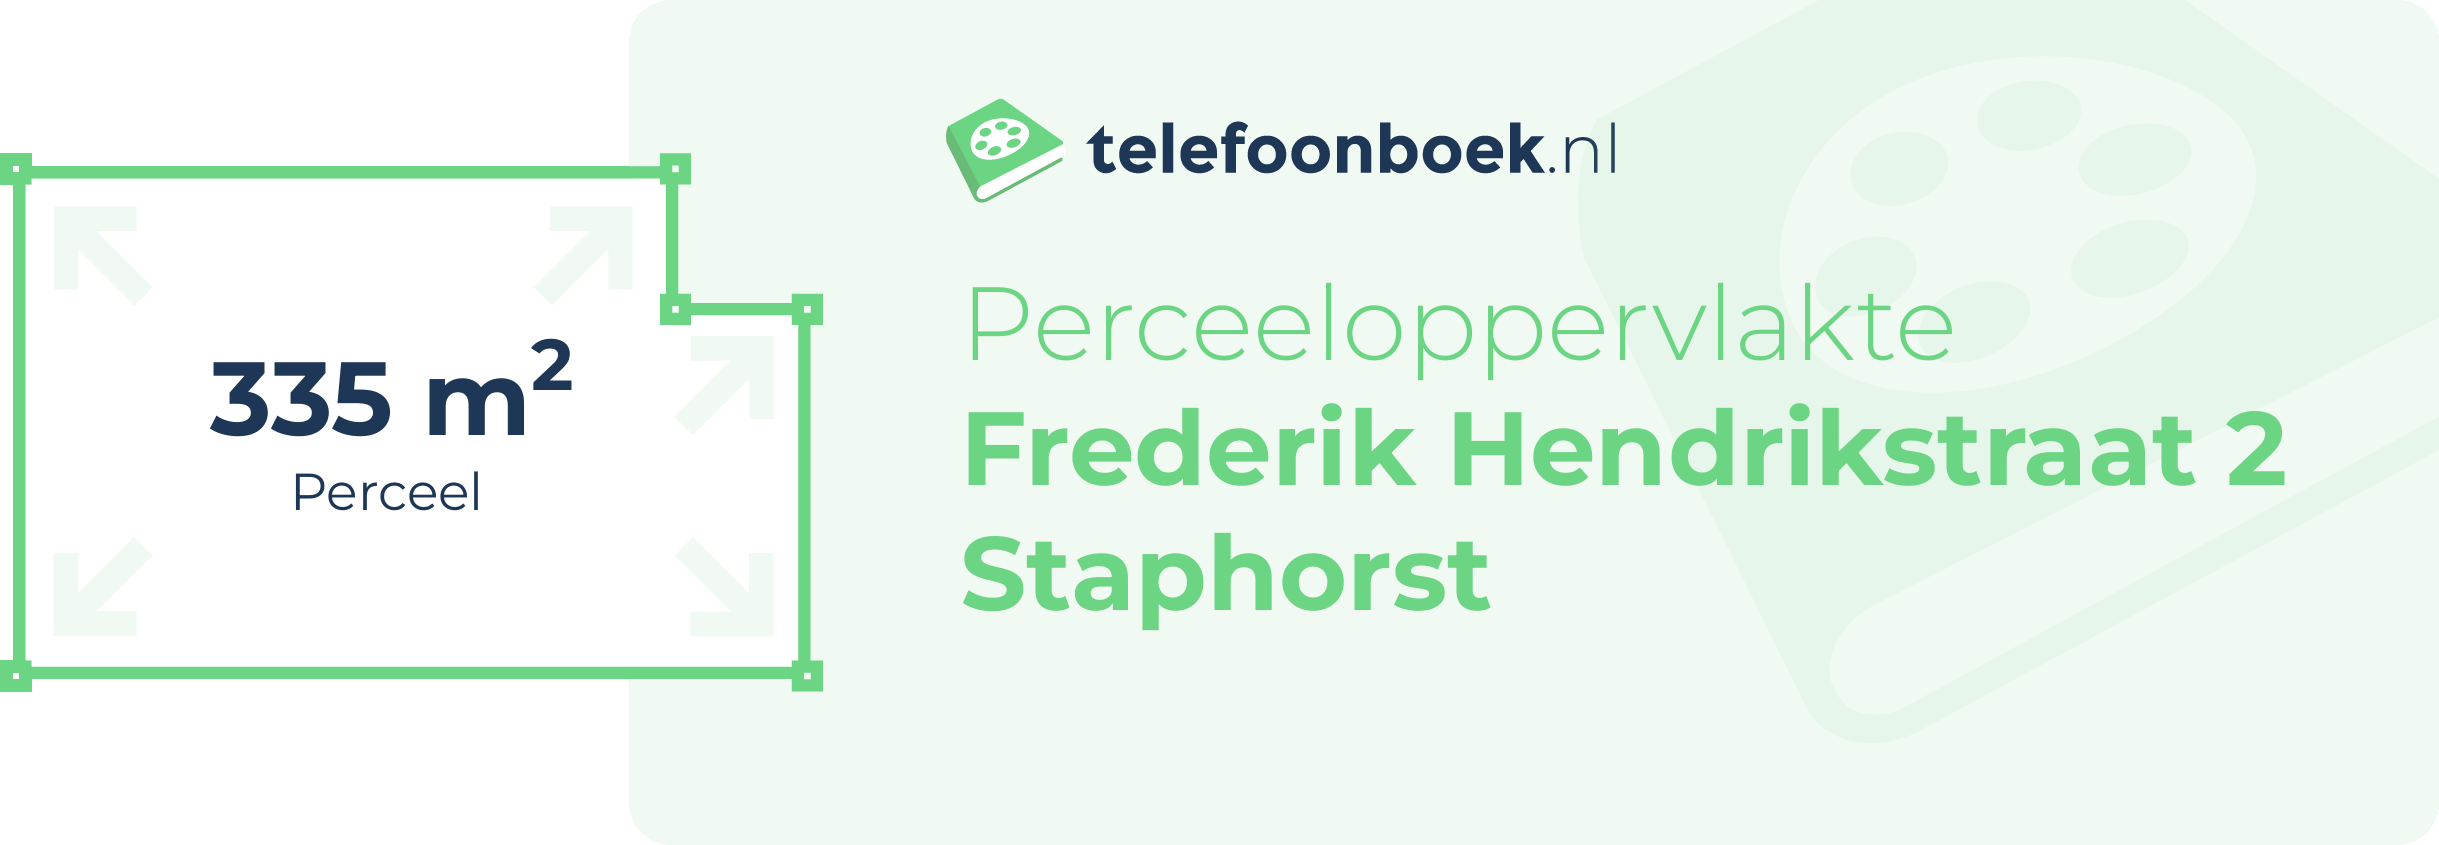 Perceeloppervlakte Frederik Hendrikstraat 2 Staphorst